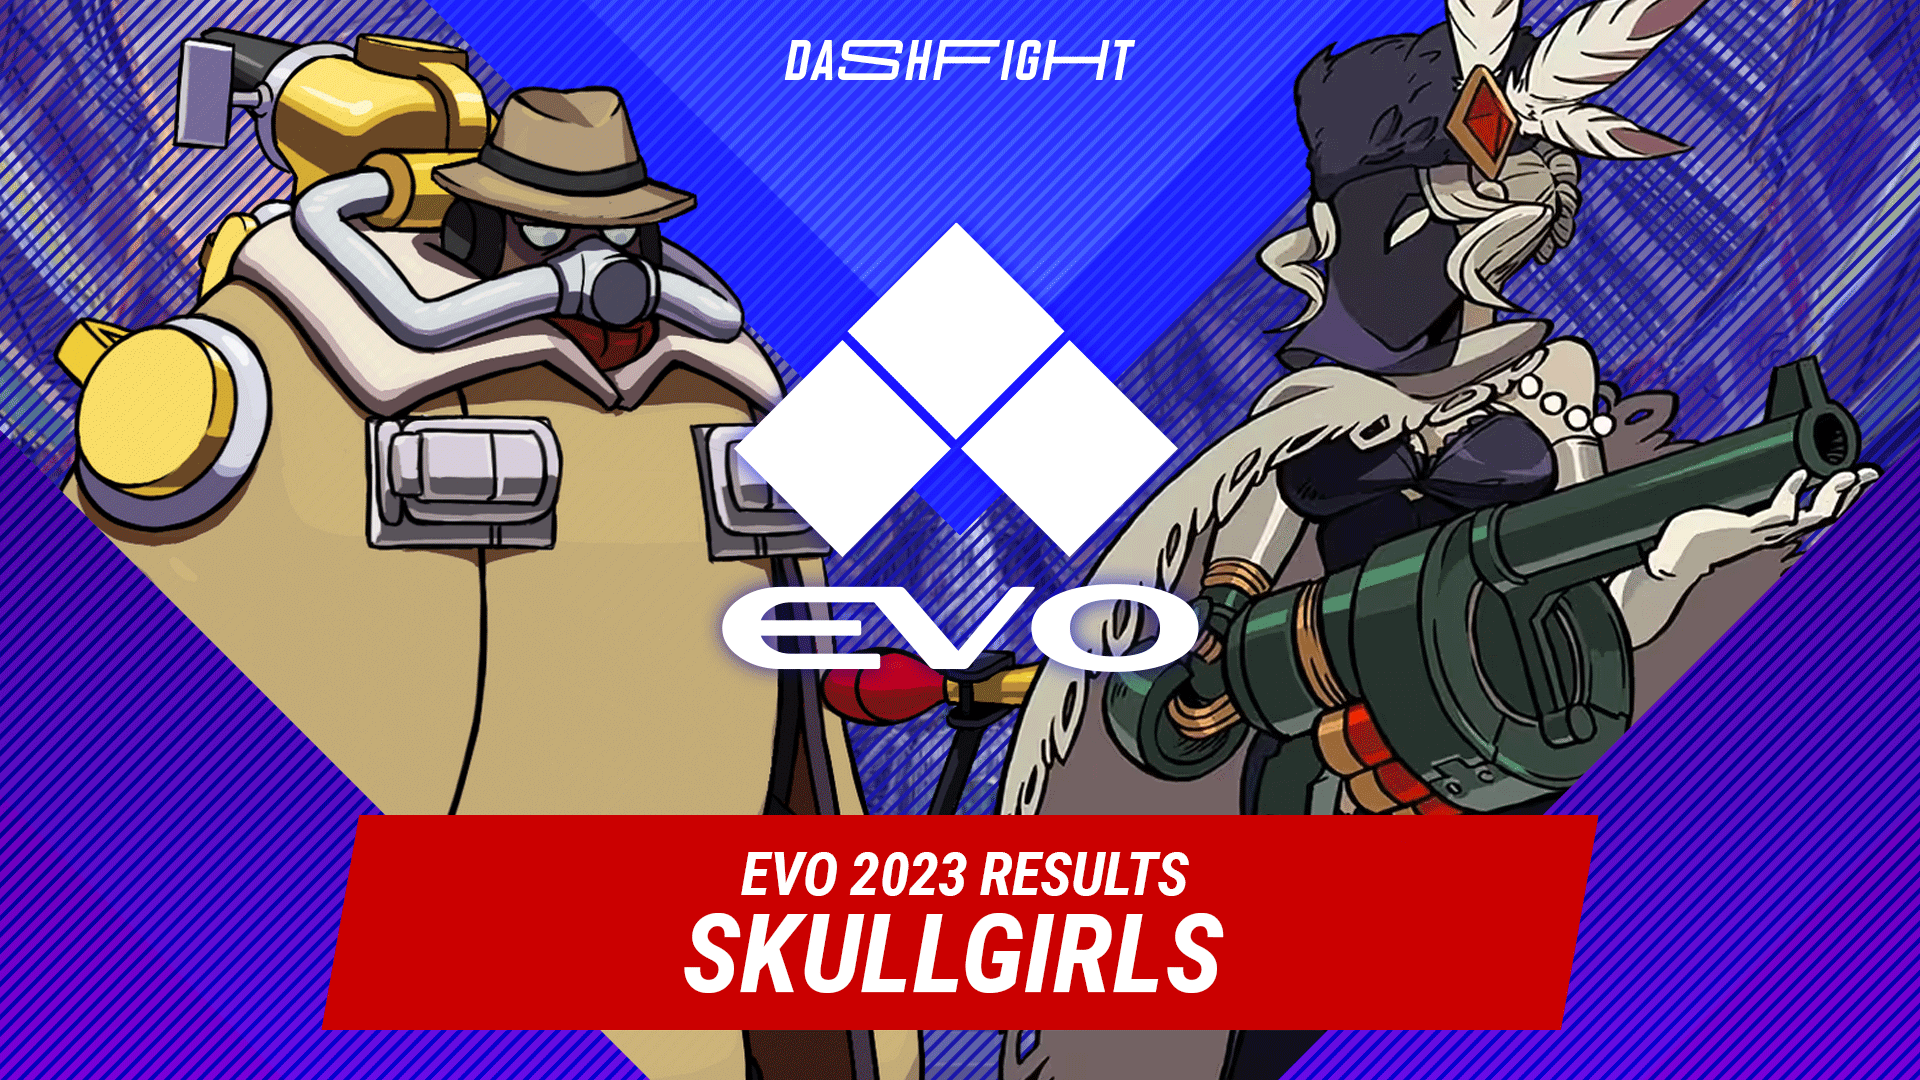  Skullgirls at Evo 2023: Big Bang vs Black Dahlia